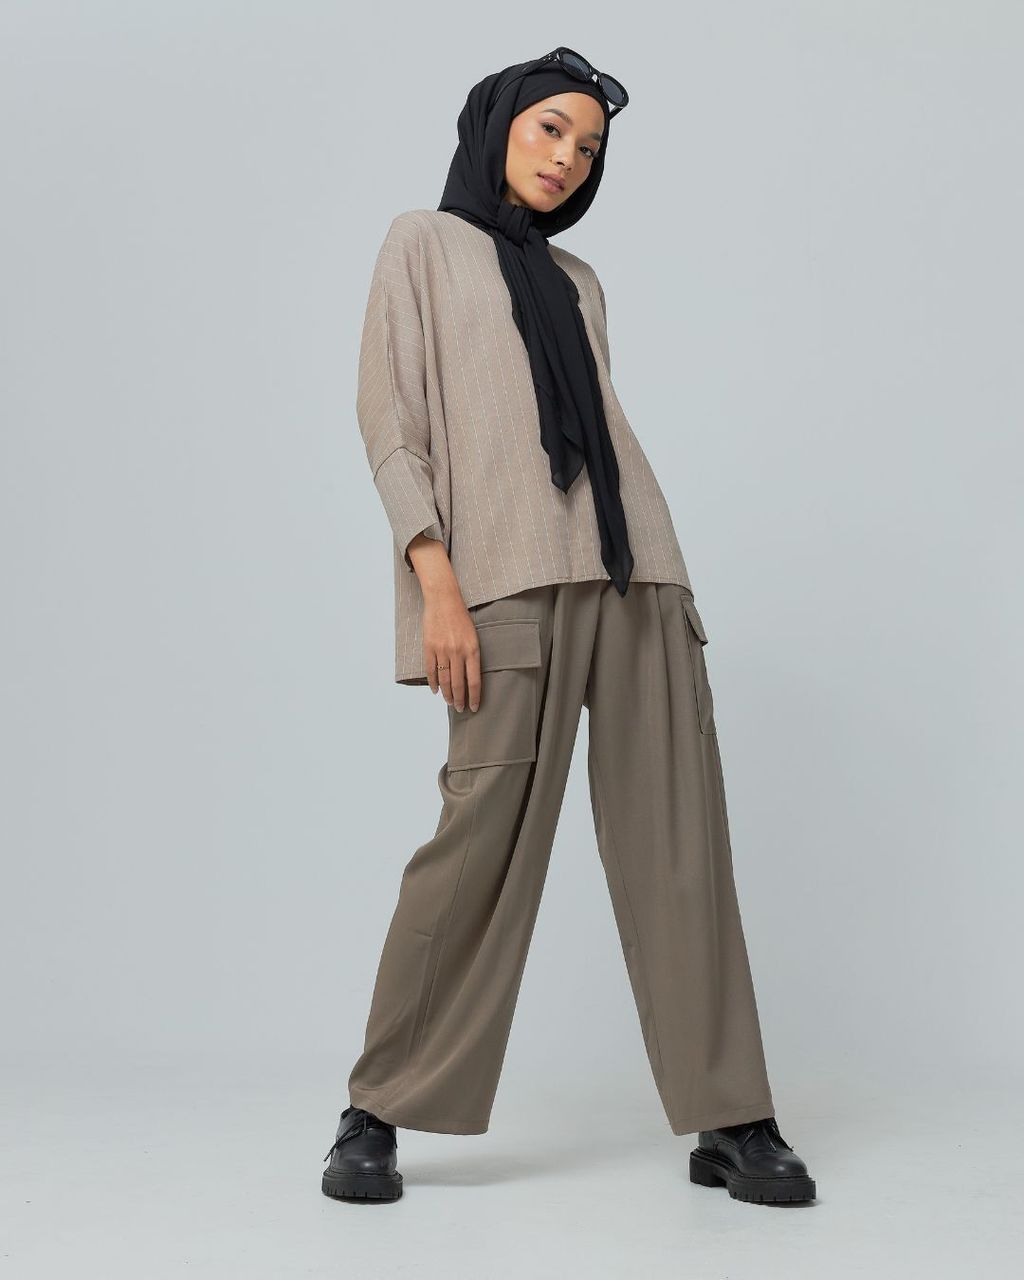 haura-wear-demi-blouse-lengan panjang-kemeja labuh-baju labuh-tunic-kaftan-midi-dress-blouse-shirt-long-sleeve-baju-muslimah-baju-perempuan-shirt-blouse-baju (9)